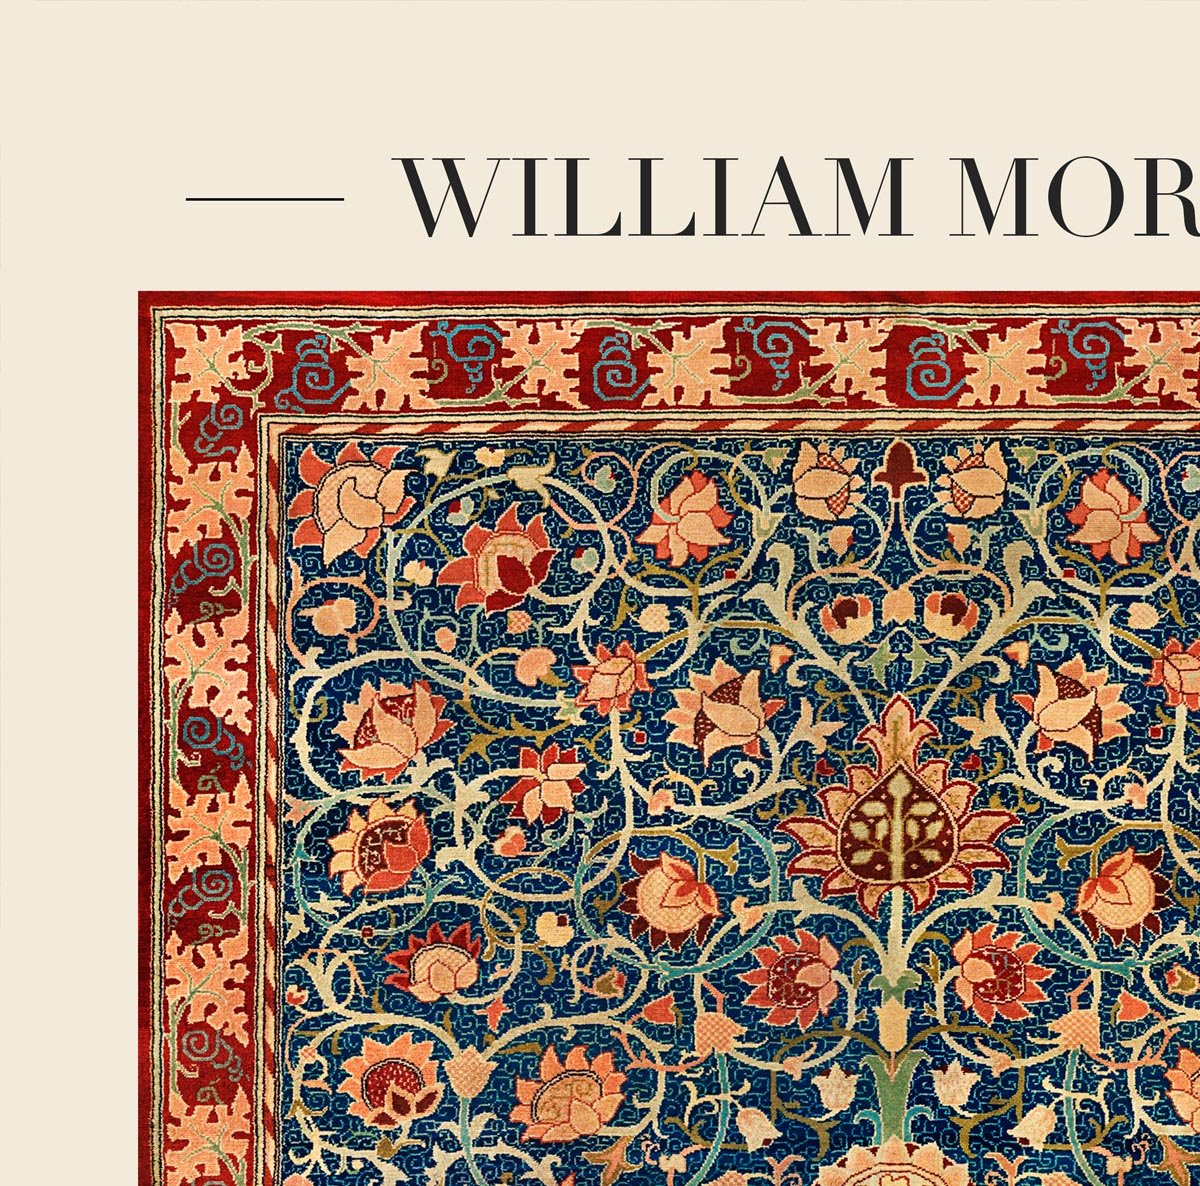 William Morris Holland Park Carpet Art Exhibition Poster